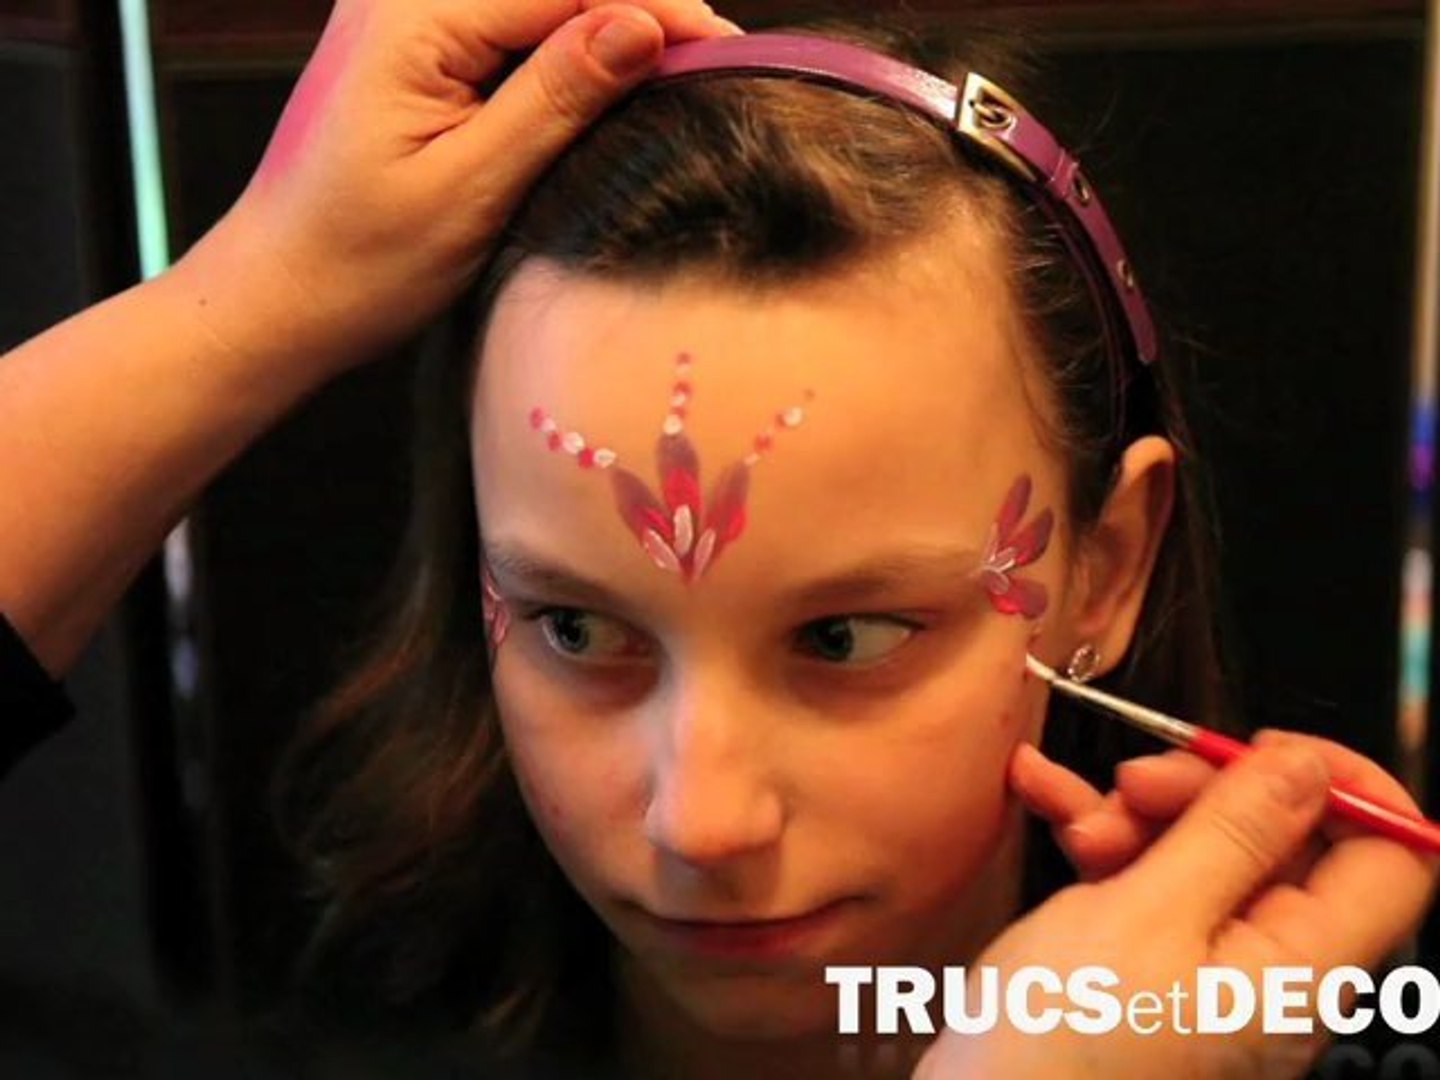 Maquillage de princesse : idées pour maquiller une fille par  TrucsetDeco.com - Vidéo Dailymotion